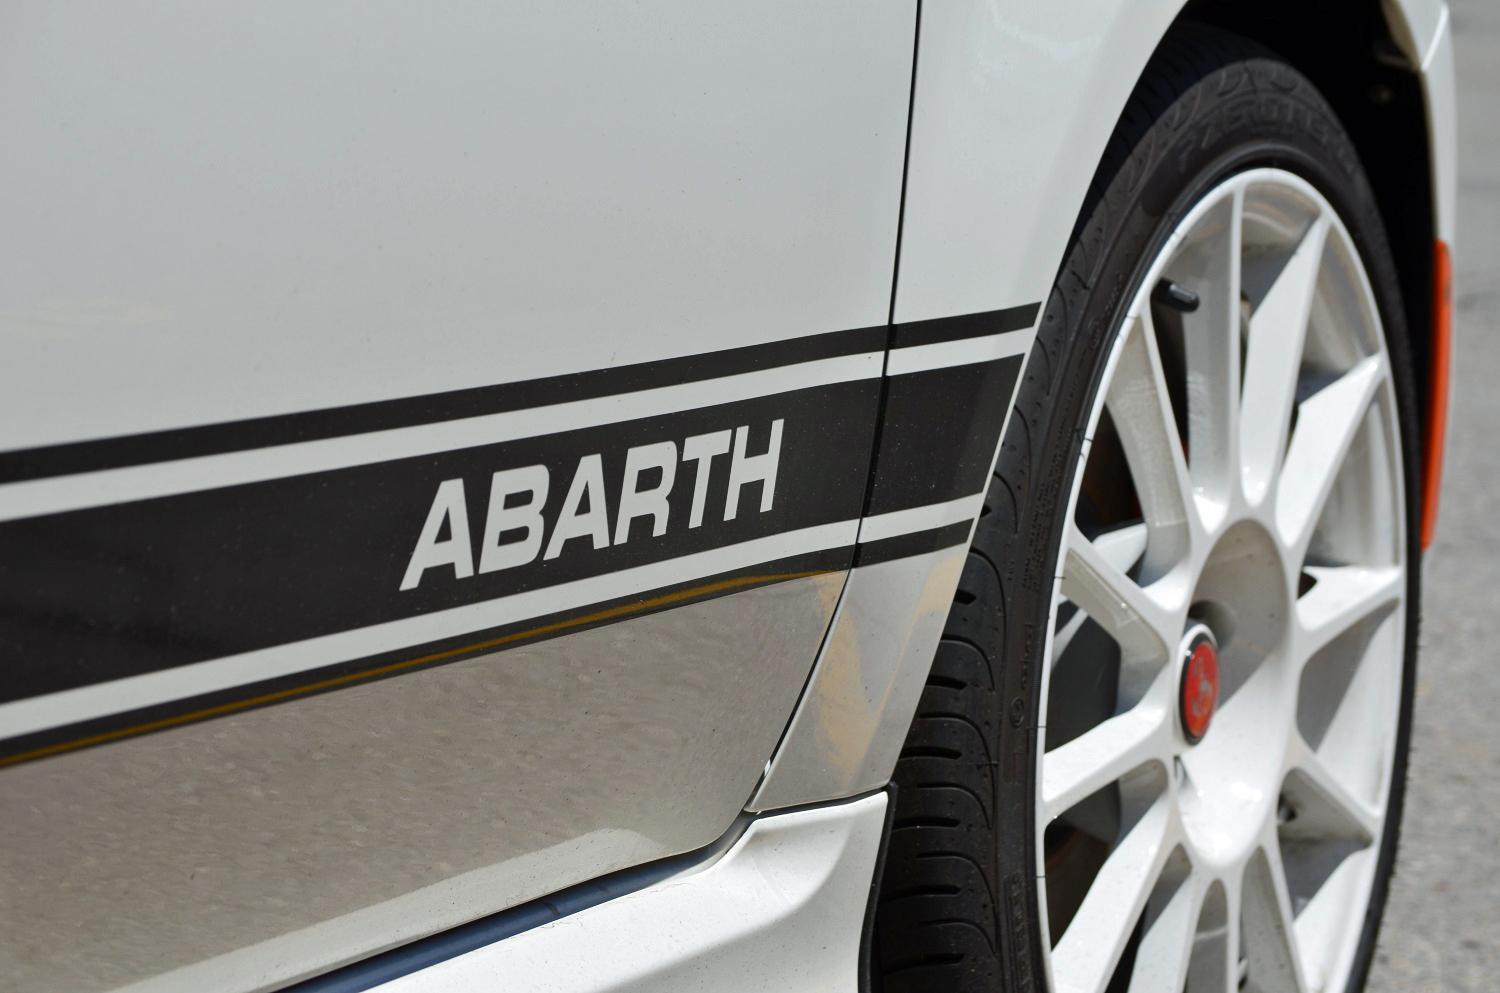 Fiat Abarth logo